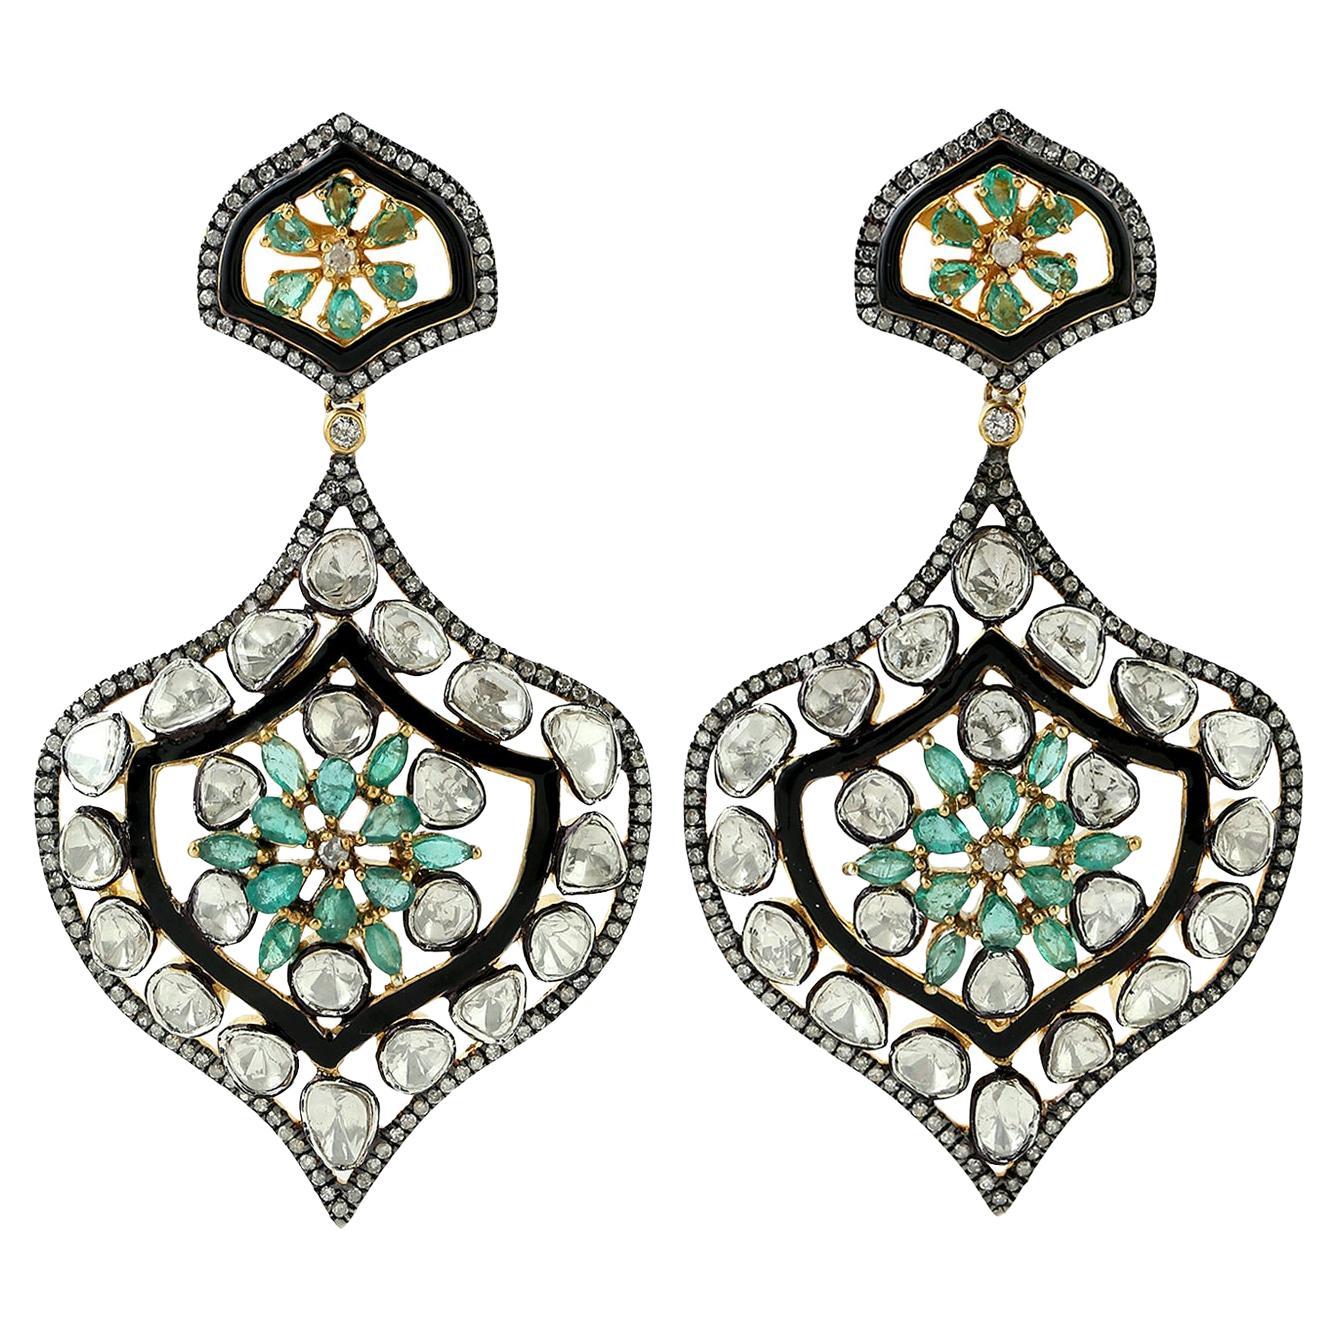 7,96 Karat Diamanten im Rosenschliff & Smaragd zu Spinning Top-Ohrringen